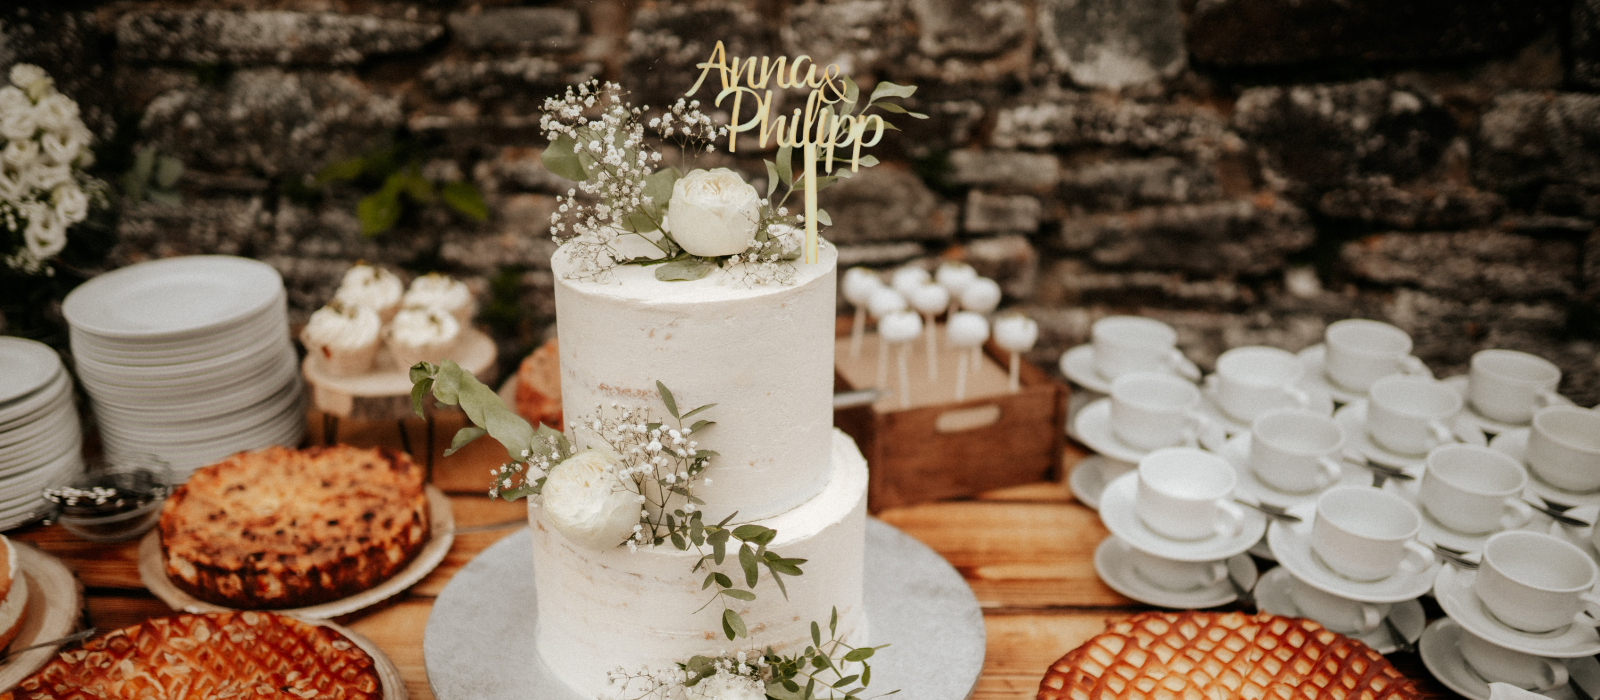 Cake Topper
für Hochzeiten, Geburtstage und andere Feiern